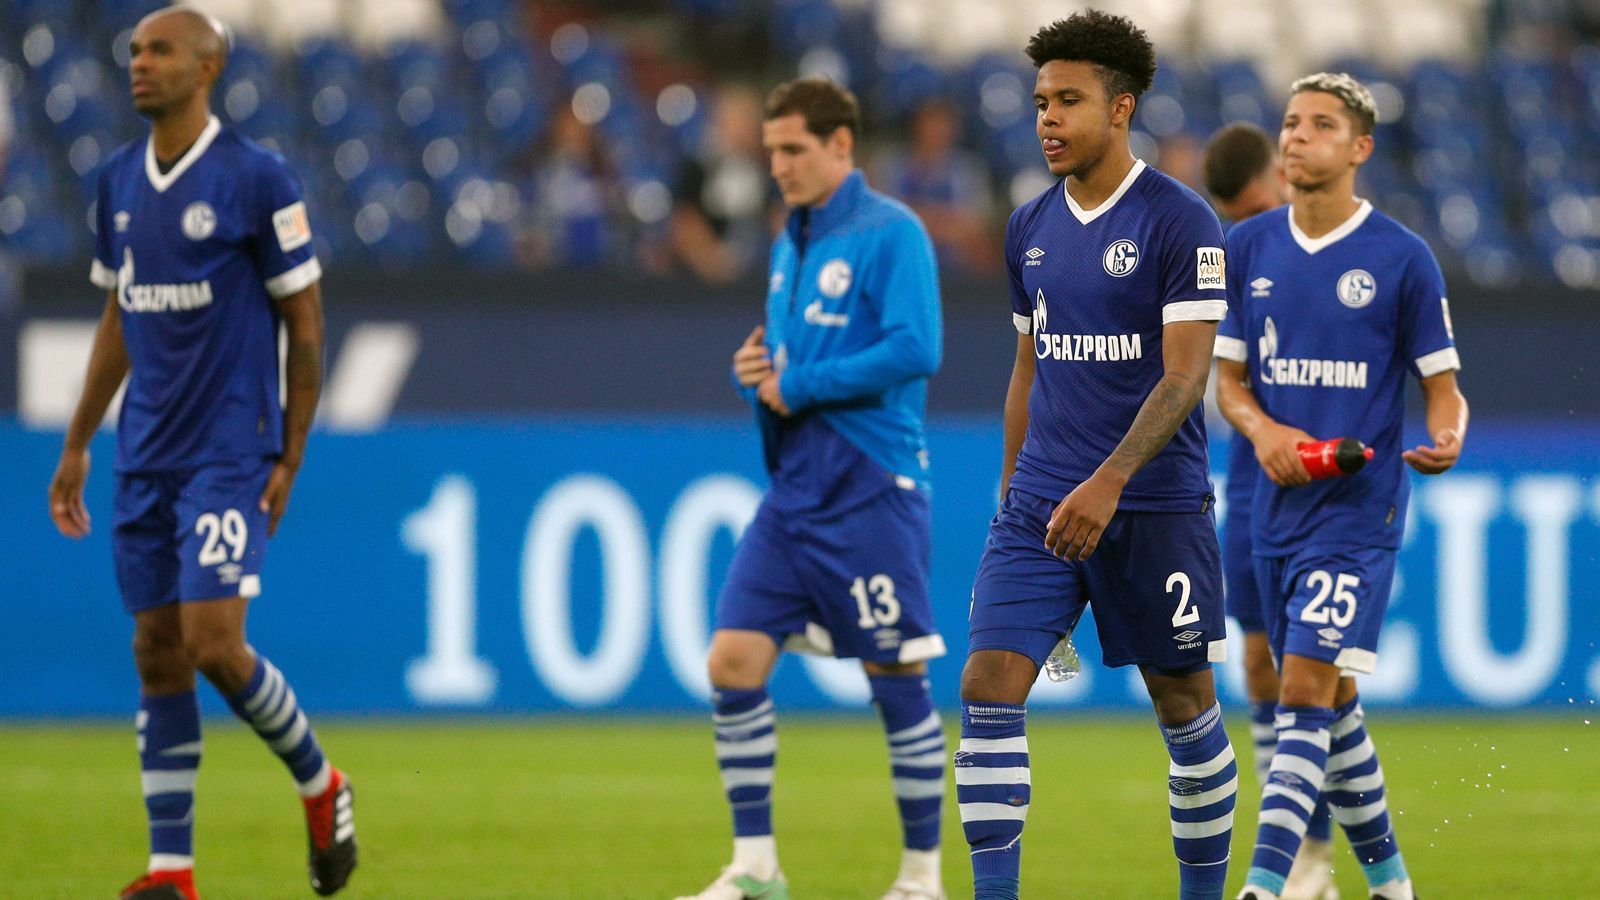 
                <strong>Platz 33 - FC Schalke 04</strong><br>
                Der Vizemeister 2017/2018 konnte die Herzen der Fans offenbar nicht erobern. Platz 33 springt am Ende nur dabei heraus - 44,79 Prozent der Befragten sehen den FC Schalke 04 als "sympathisch" an.
              